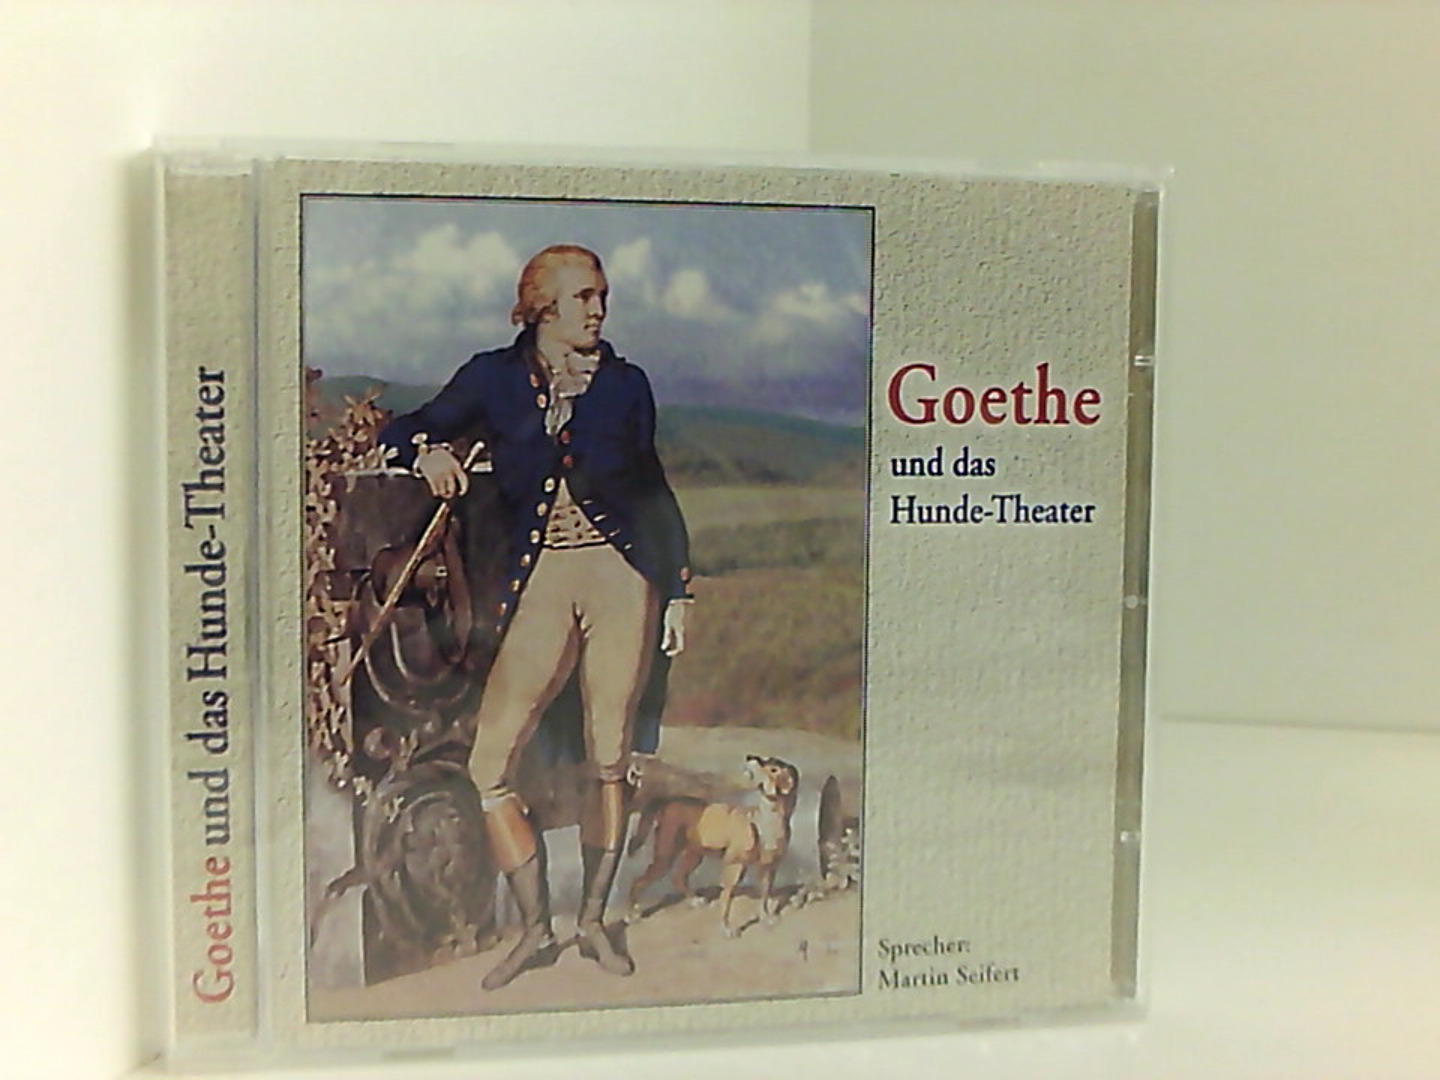 Goethe und das Hundetheater: Nach Ehm Welk 